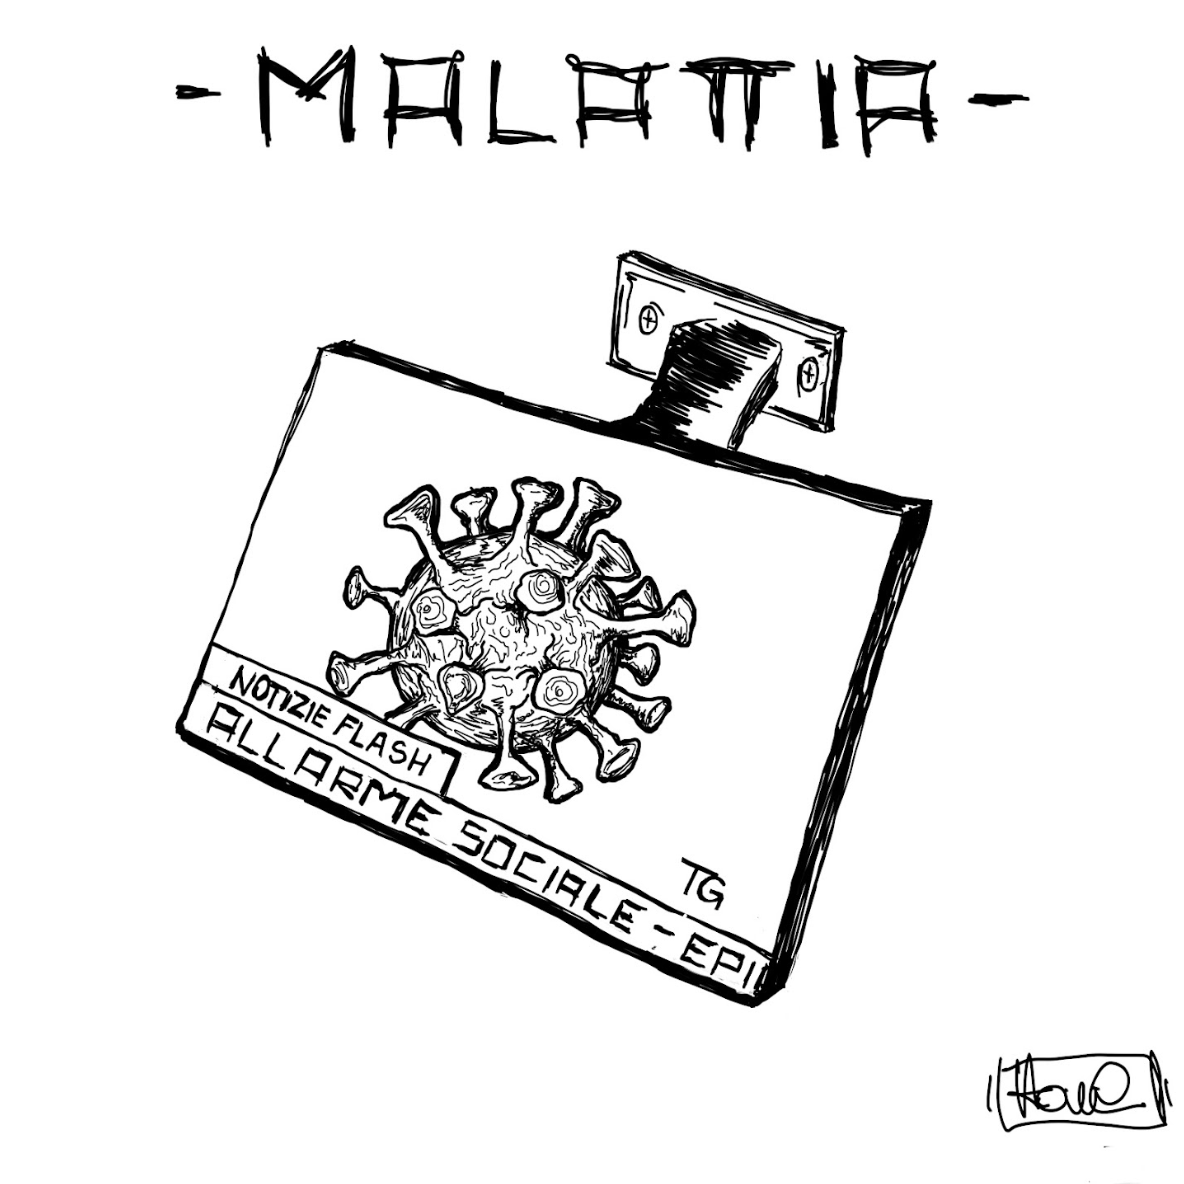 Chore presenta il nuovo singolo “Malattia” (Perché?)